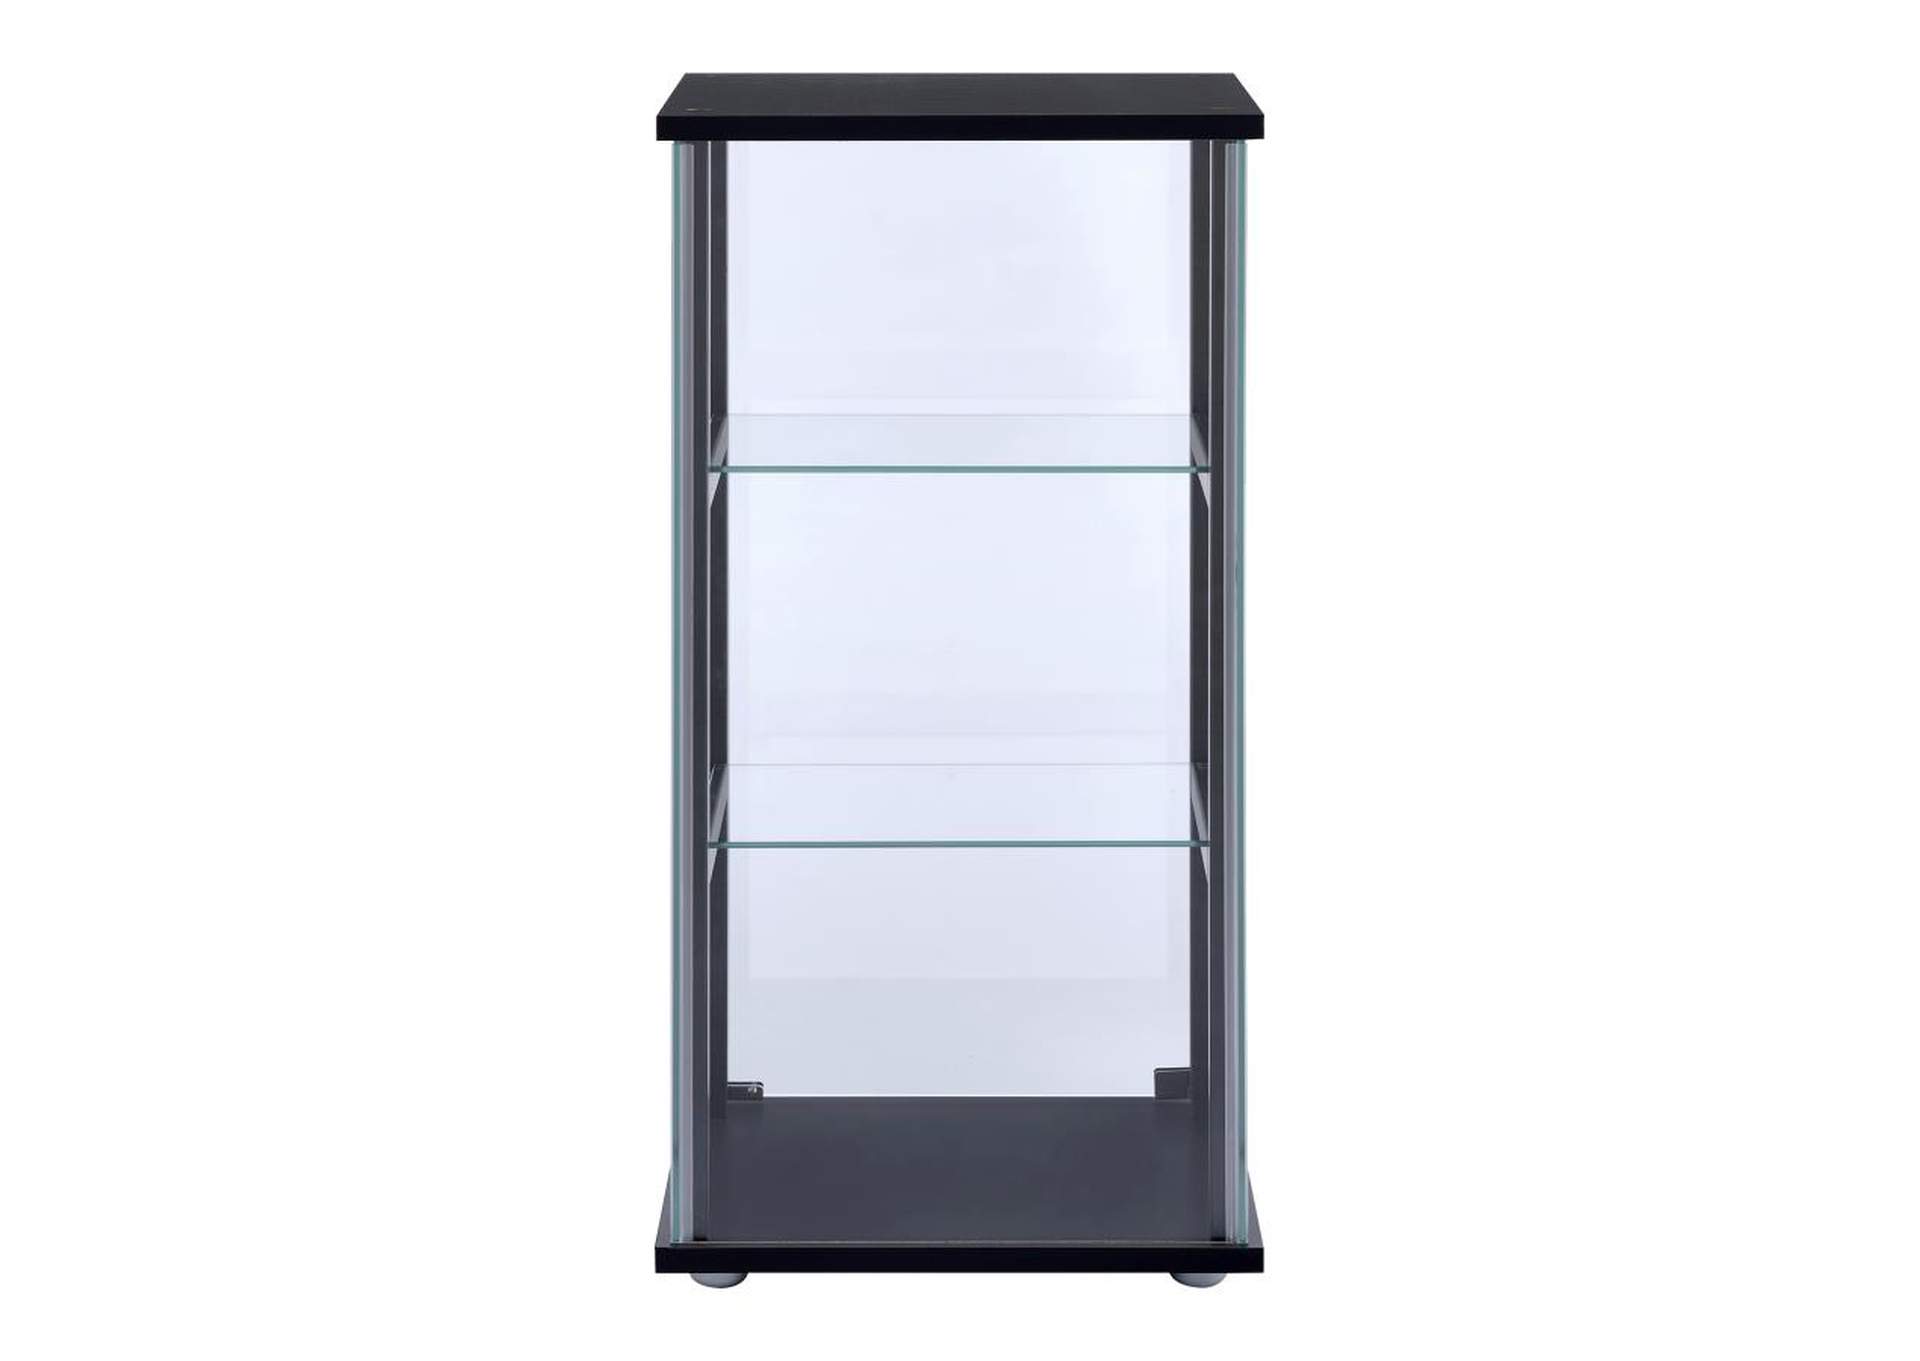 3-shelf Glass Curio Cabinet Black and Clear,Coaster Furniture